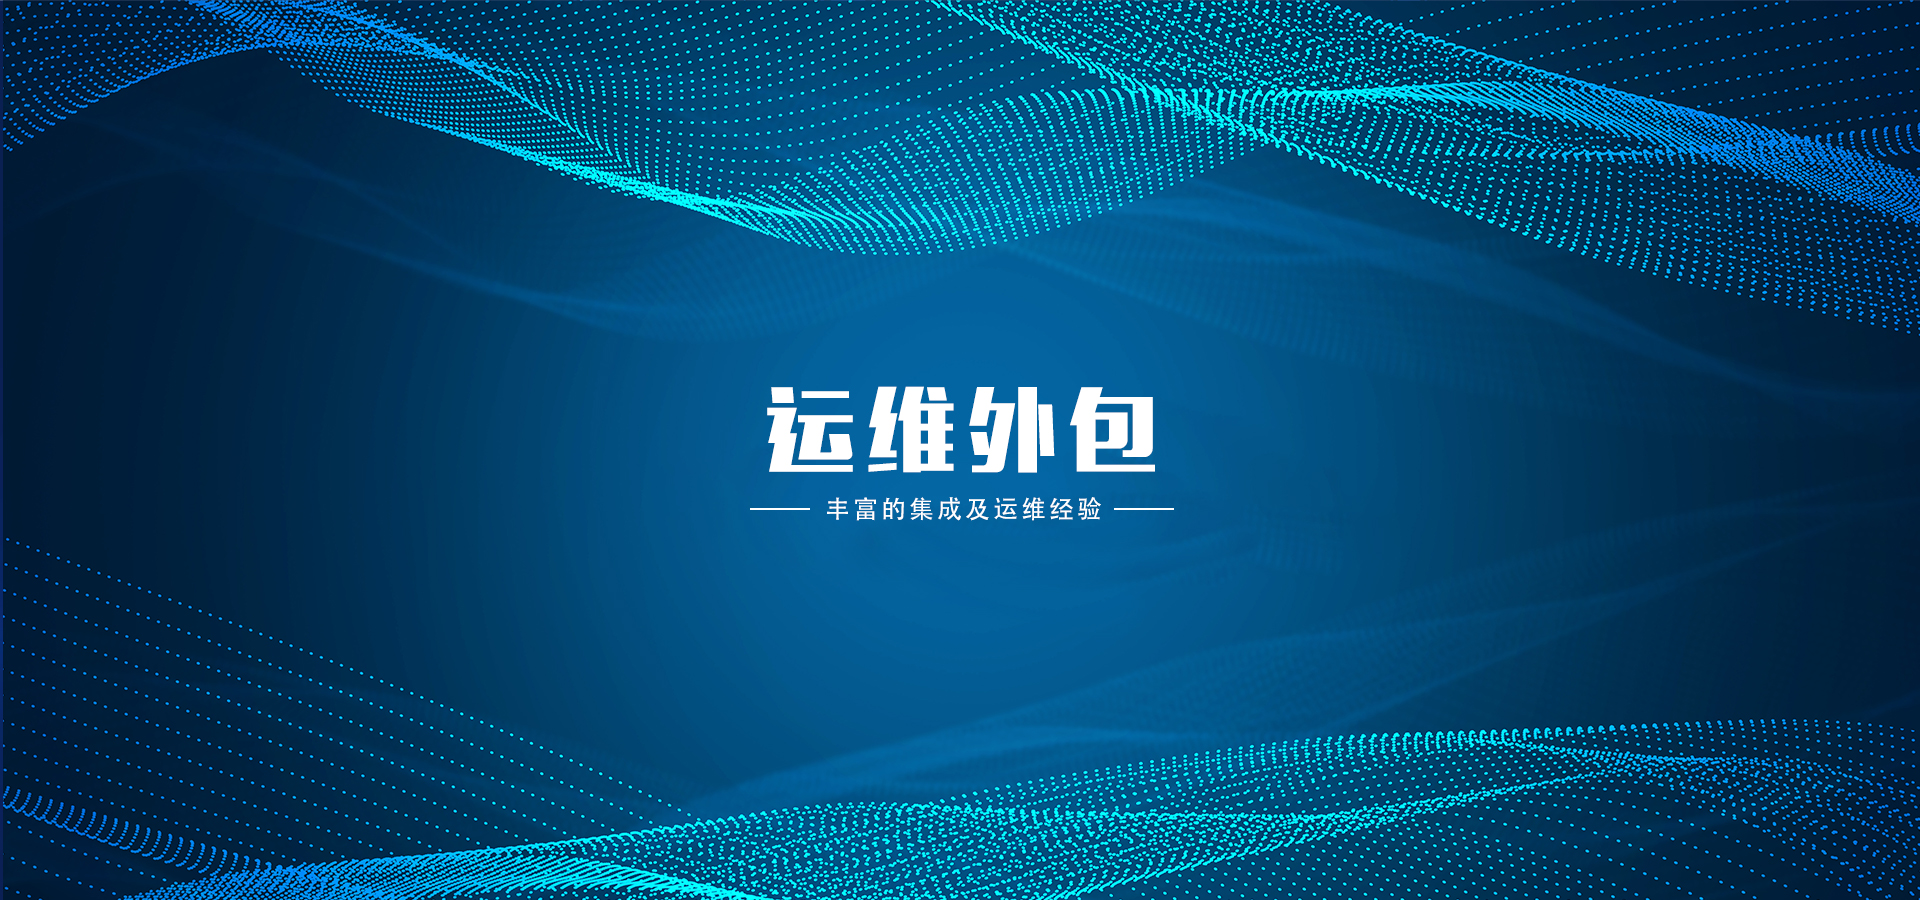 北京多研硅谷科技发展有限公司